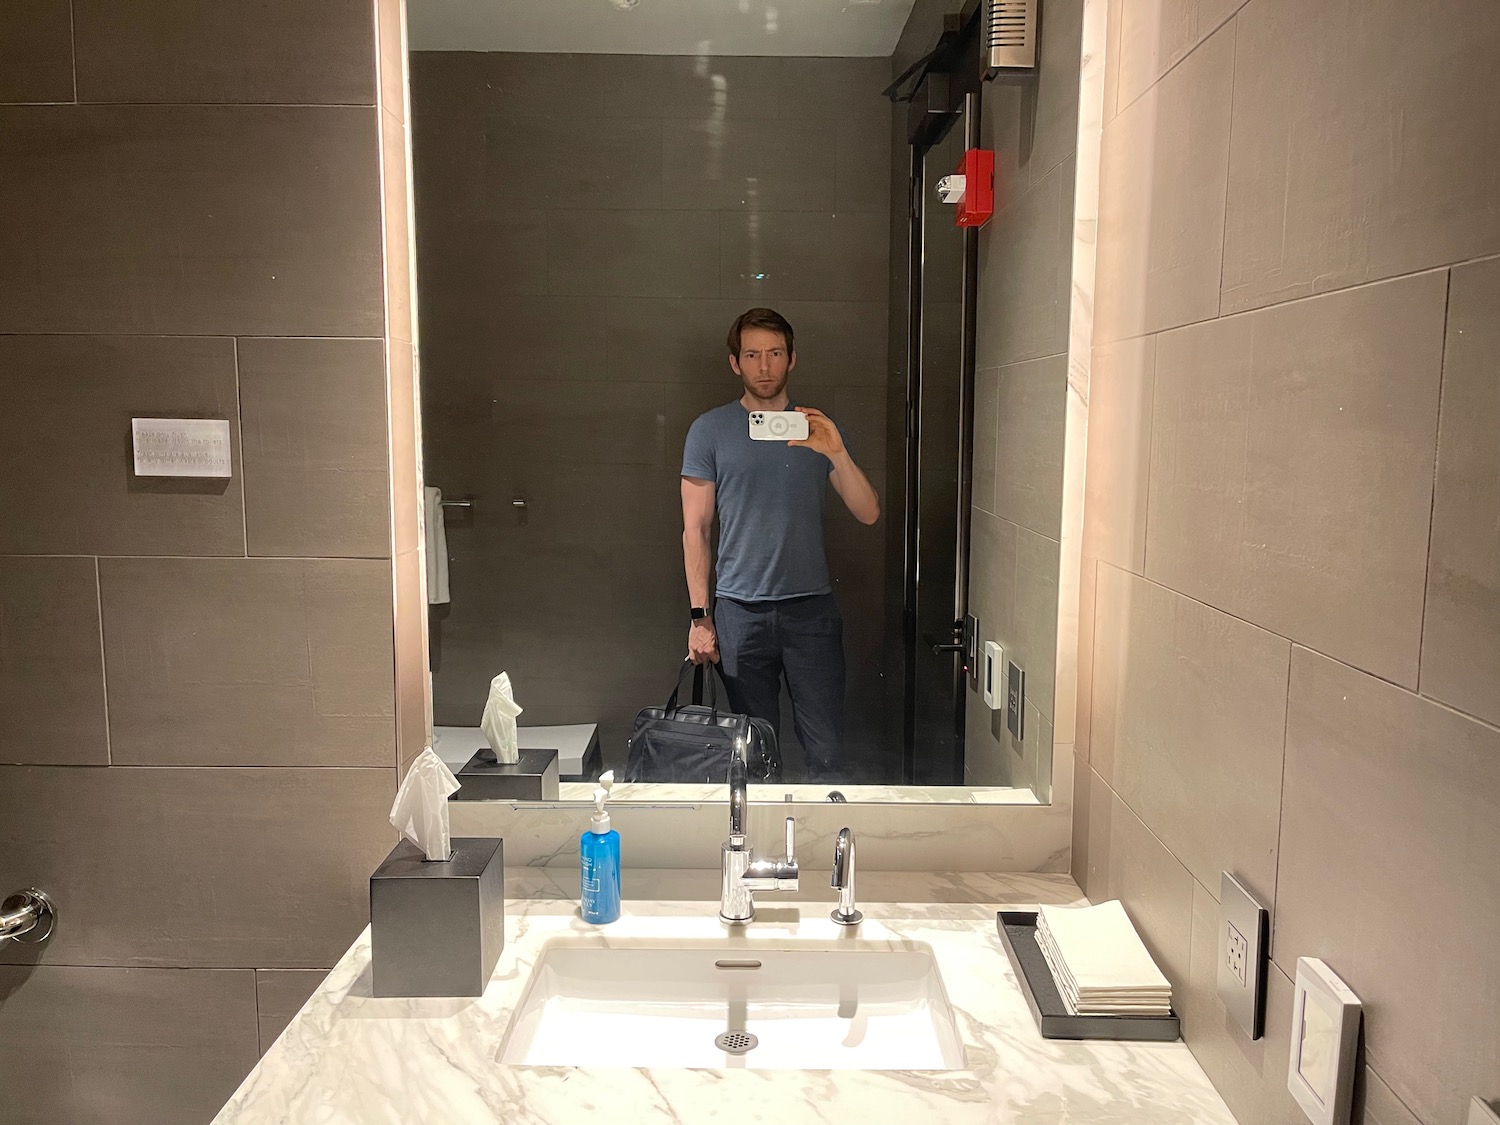 a man taking a selfie in a bathroom mirror